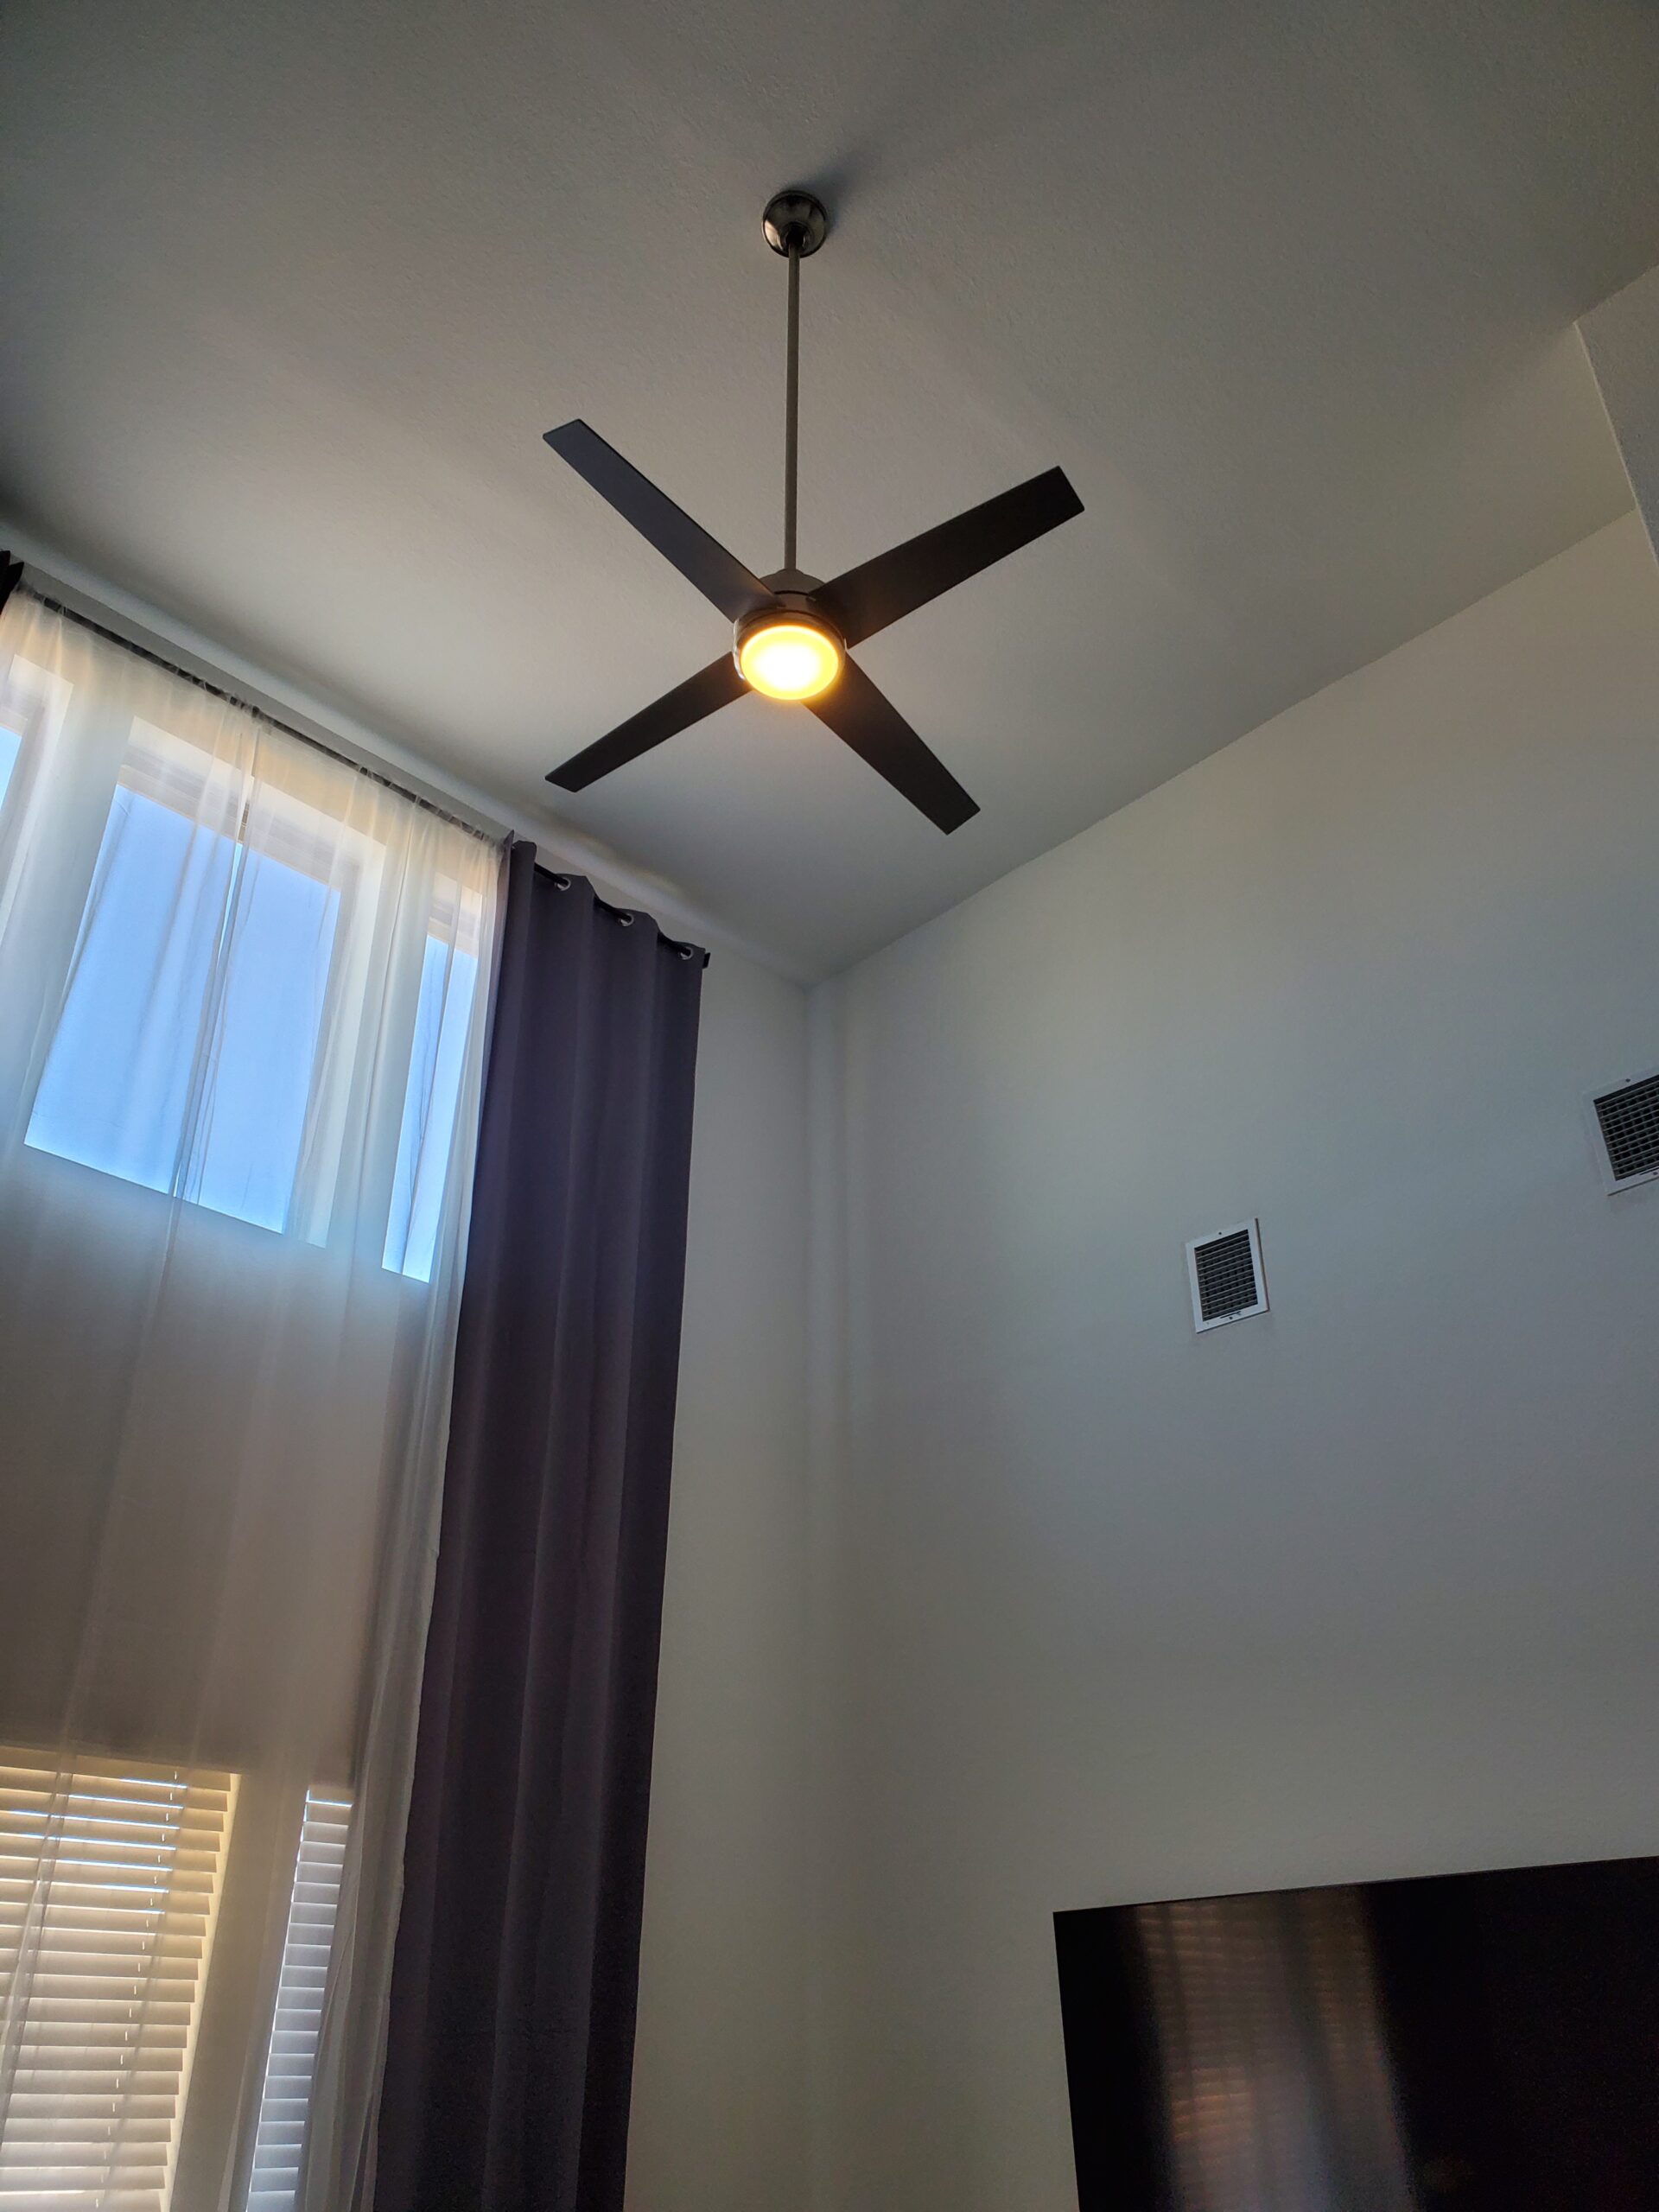 Bastrop Handyman - After new ceiling fan